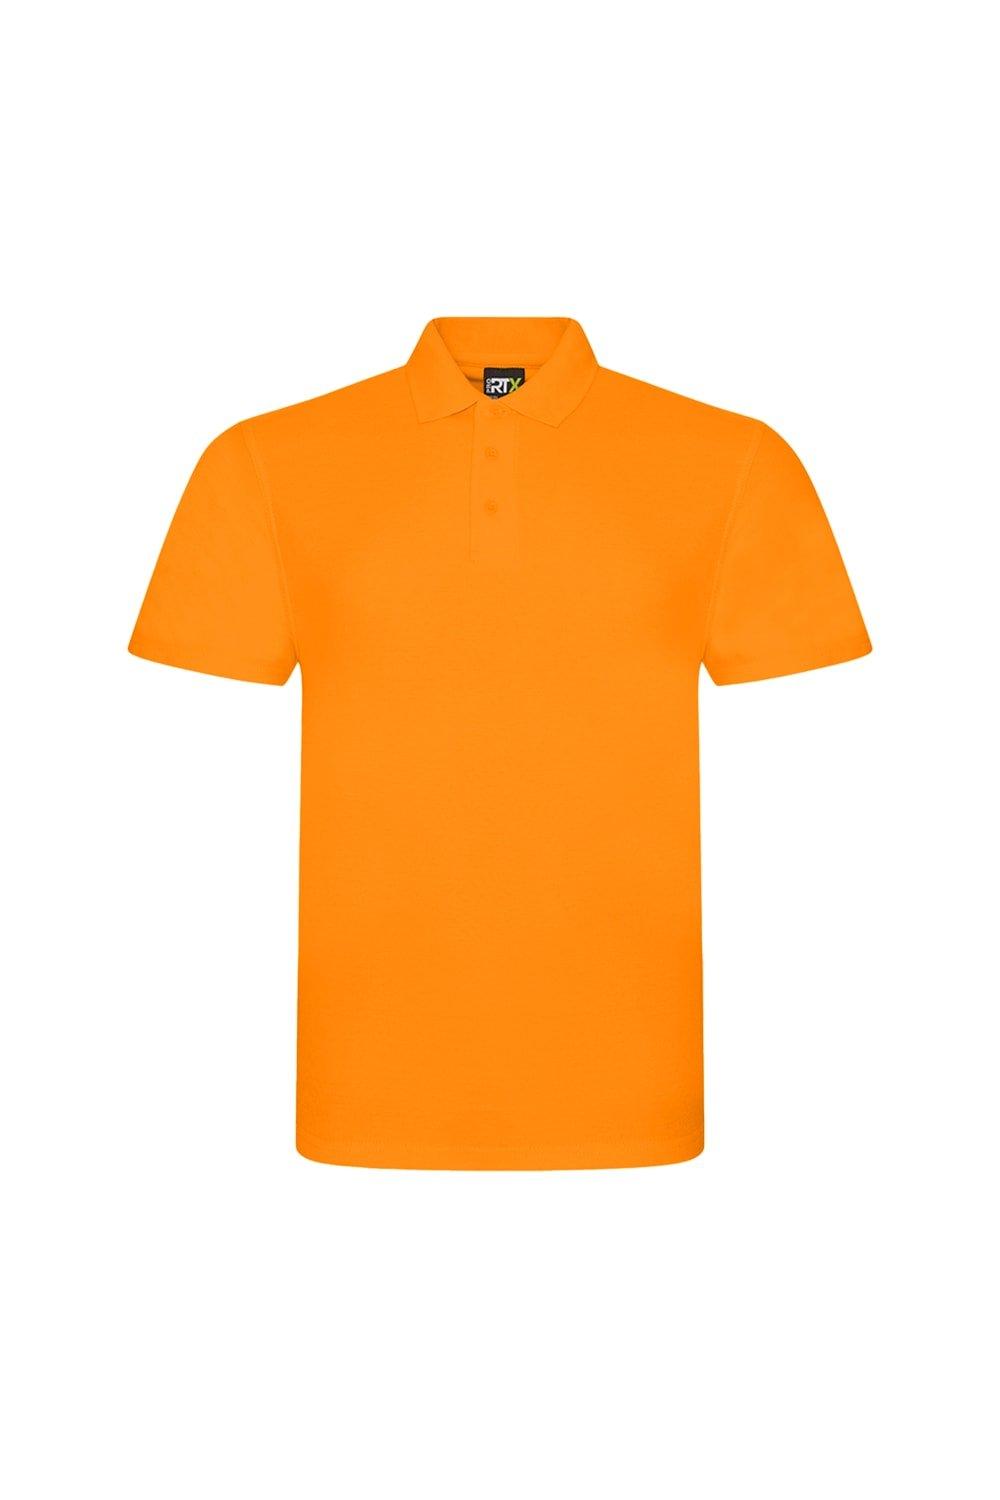 линч урсула любовь при минус пяти градусах цельсия Рубашка-поло Pro Pique PRORTX, оранжевый